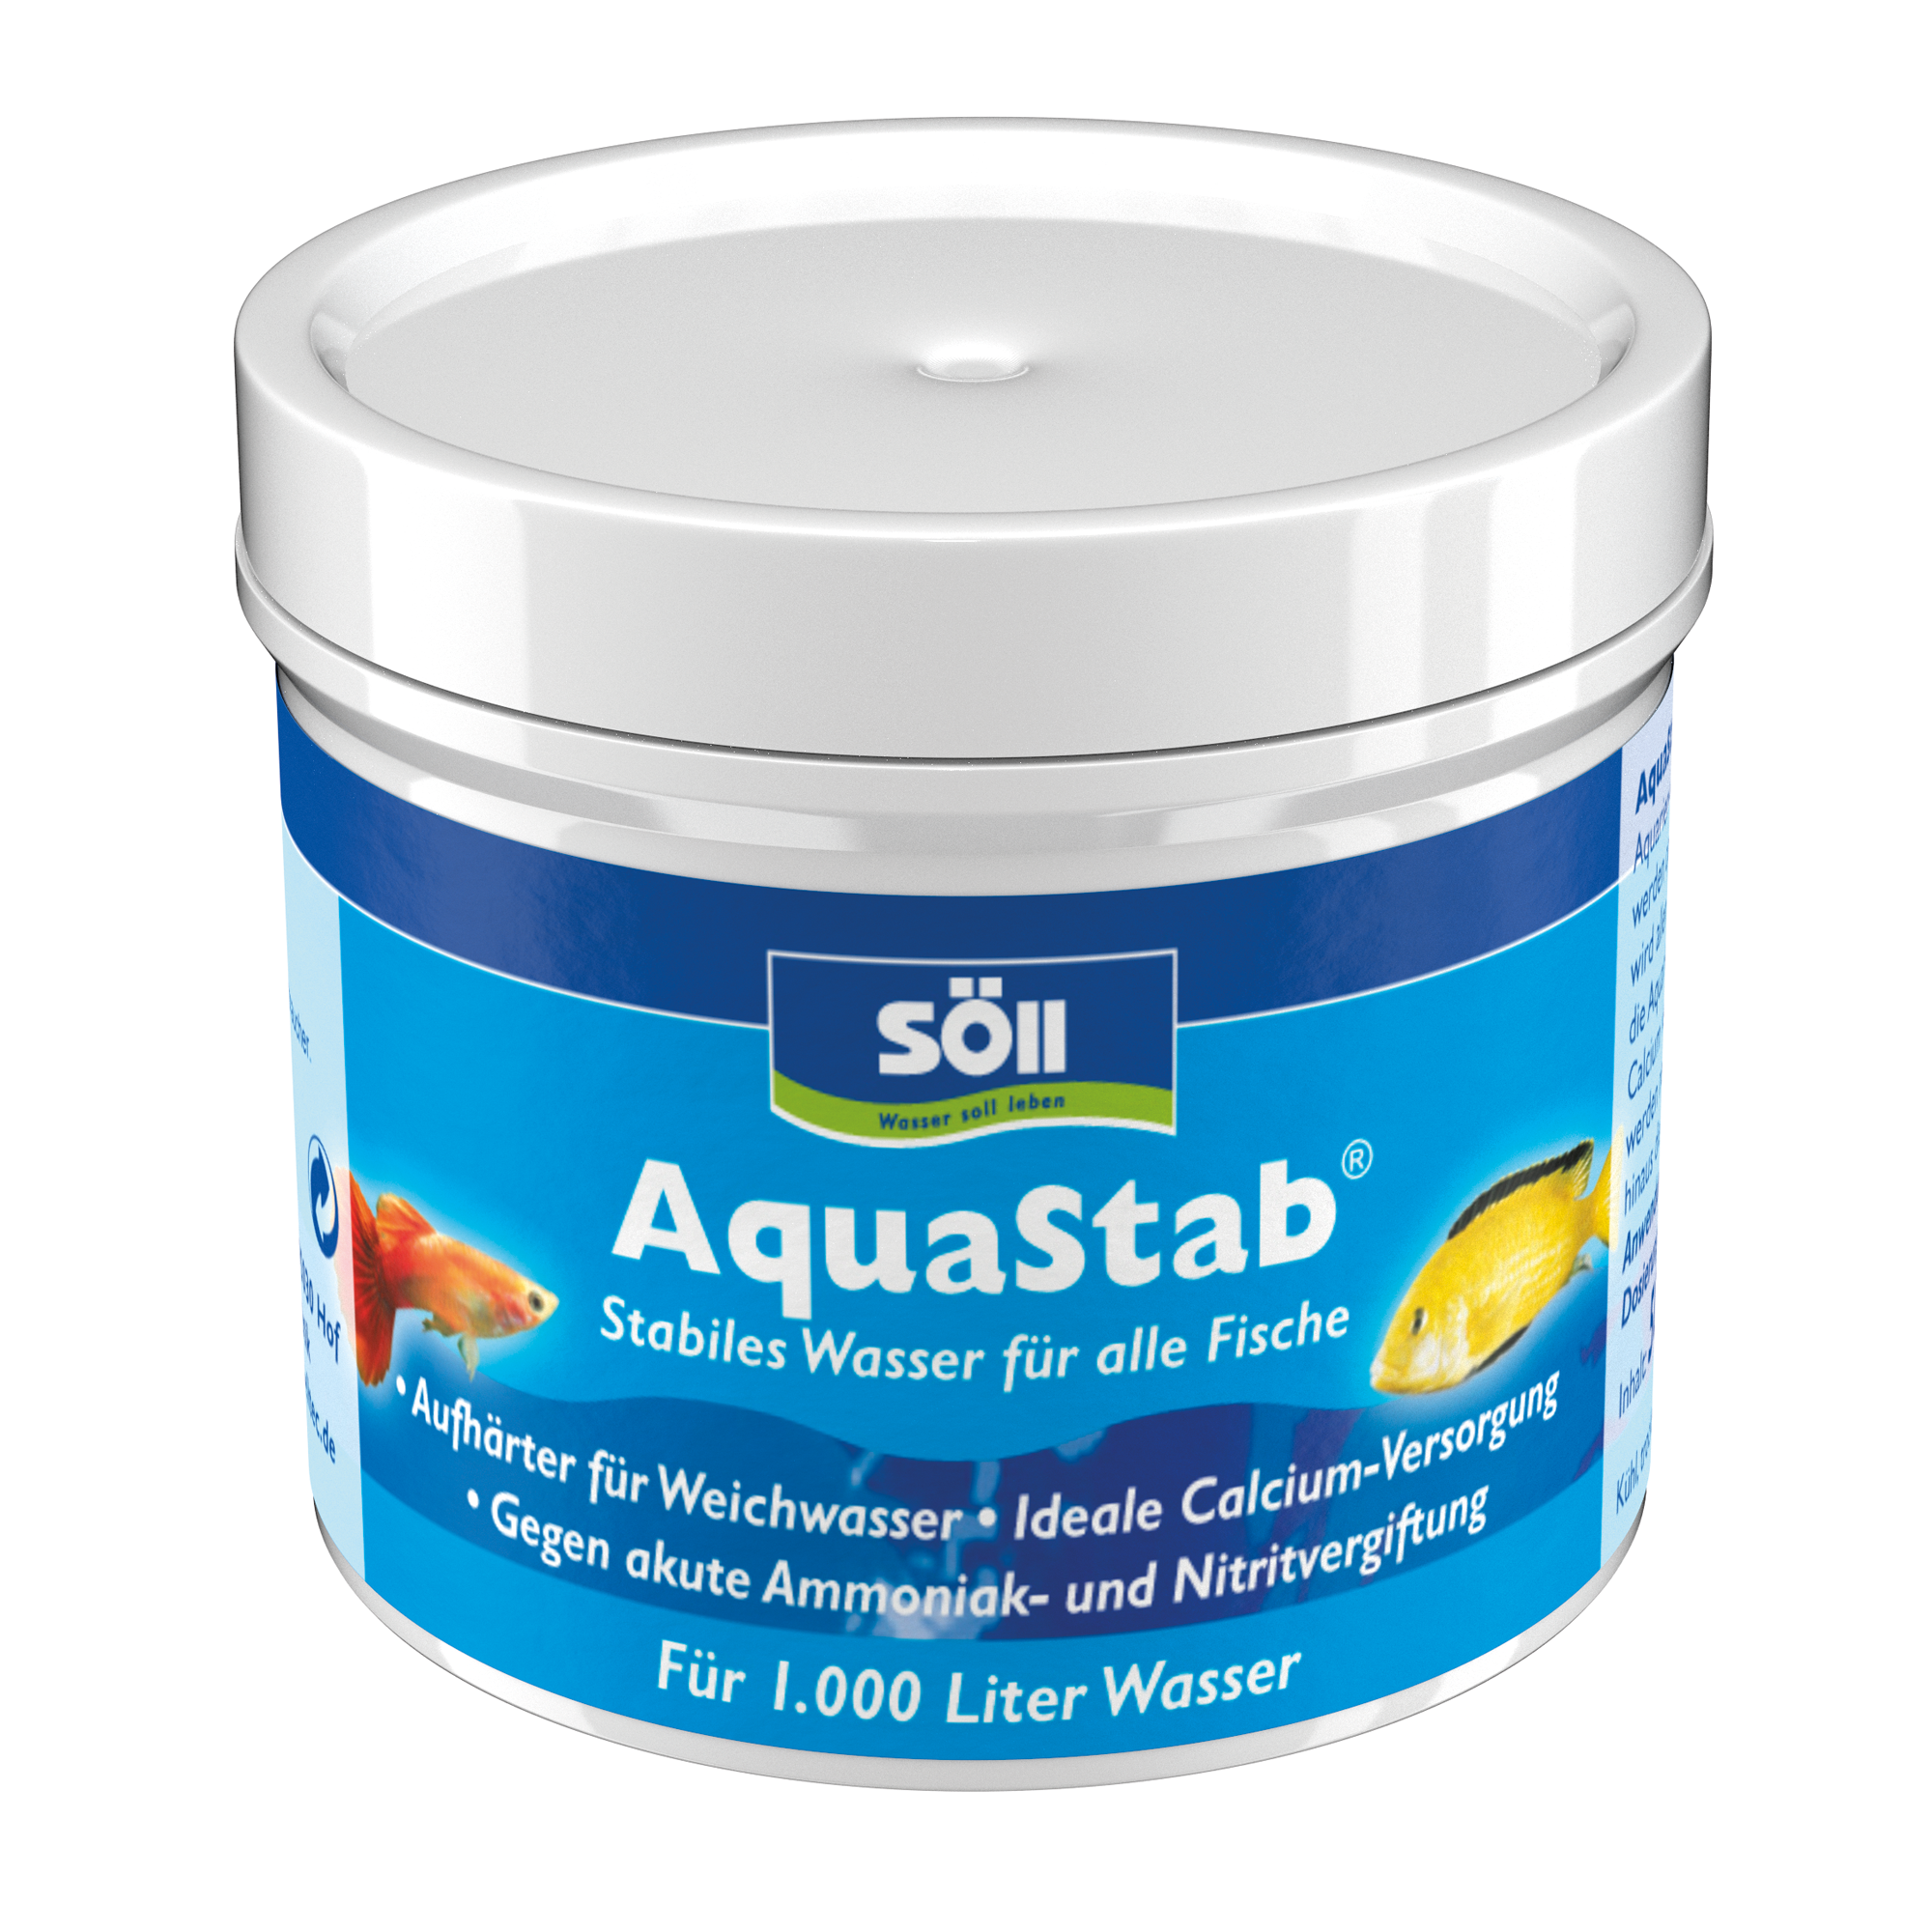 AquaStab 50 g + product picture